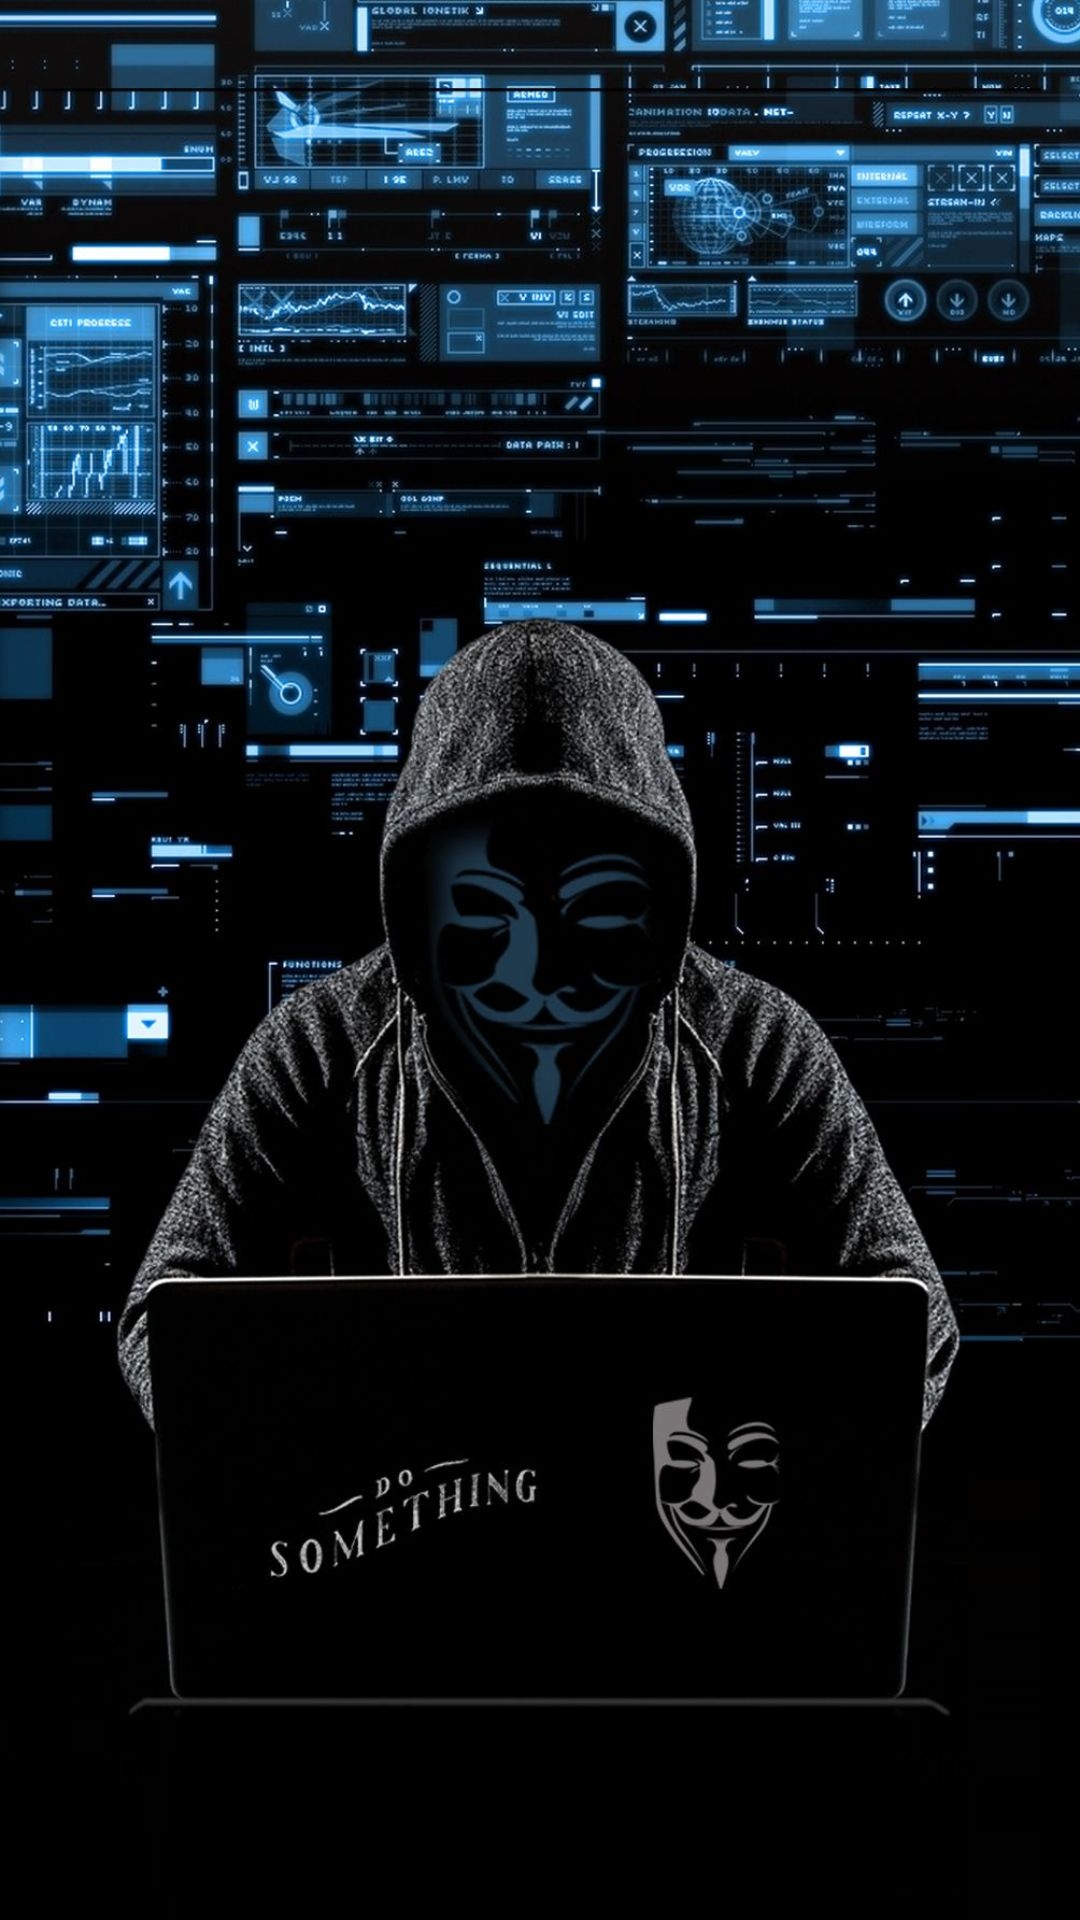 199 Hình Ảnh Hacker Anonymous Nhìn Chất Ngầu Quá Đi